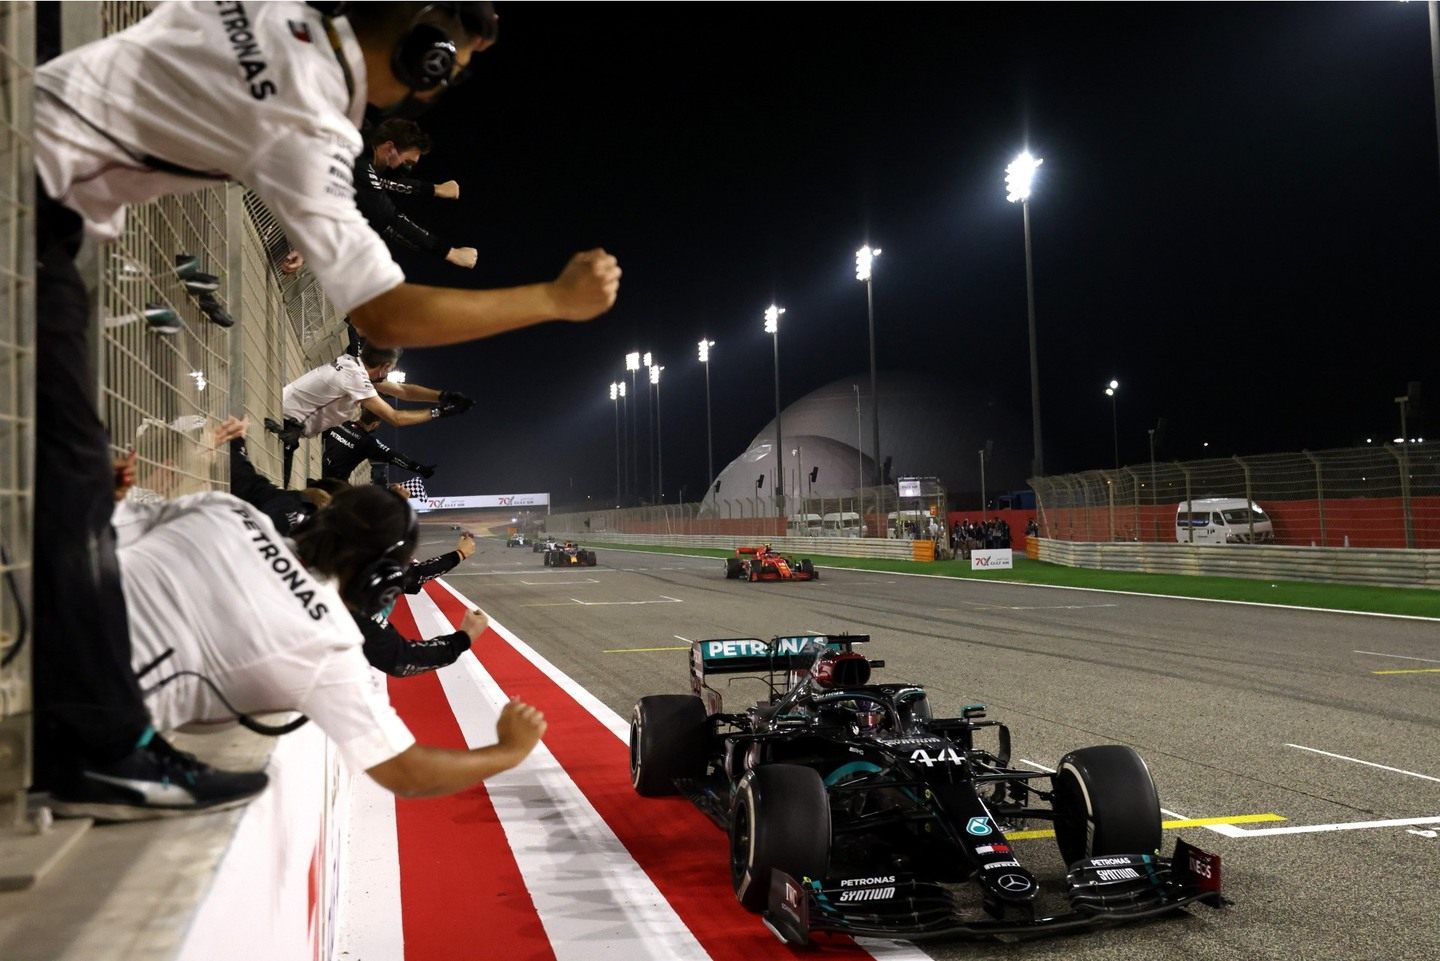 Победный финиш Льюиса Хэмилтона на Гран При Бахрейна © Mercedes AMG F1 / Steve Etherington